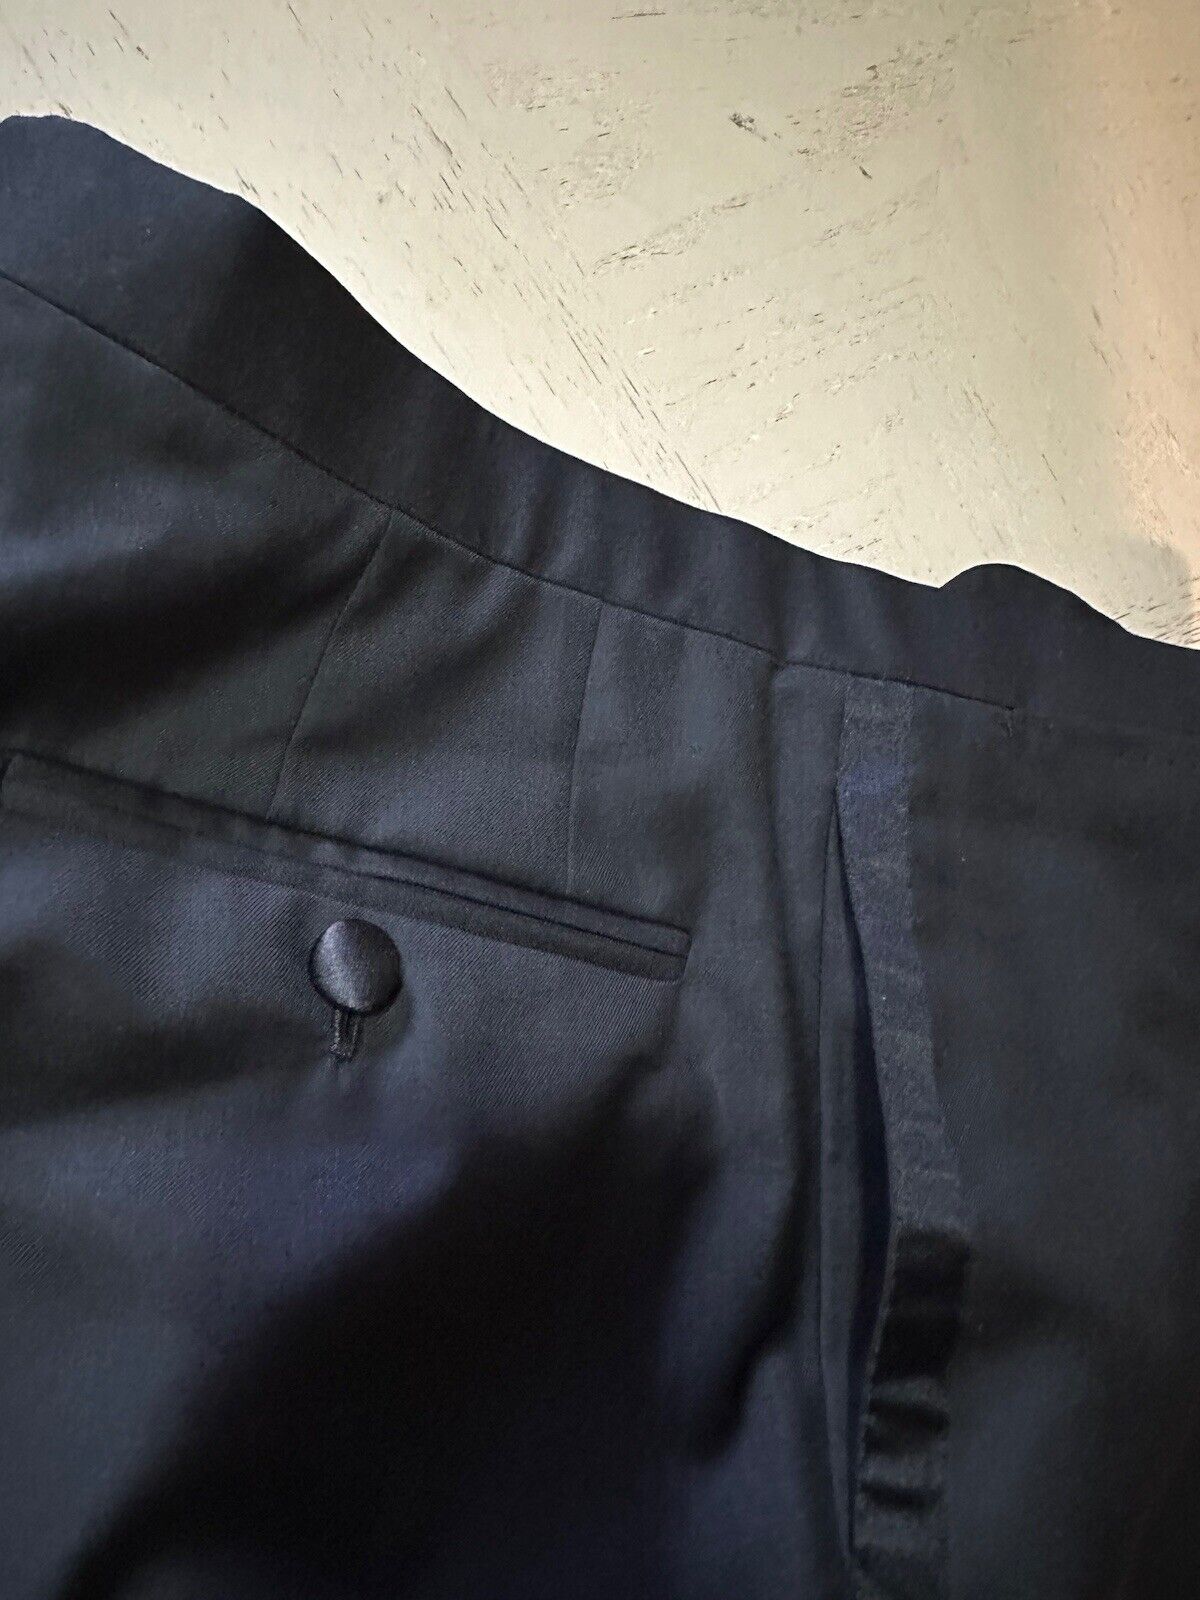 NWT $2410 Kiton Men’s Tuxedo Pants Super 150S Wool Black 38 US/54 Eu